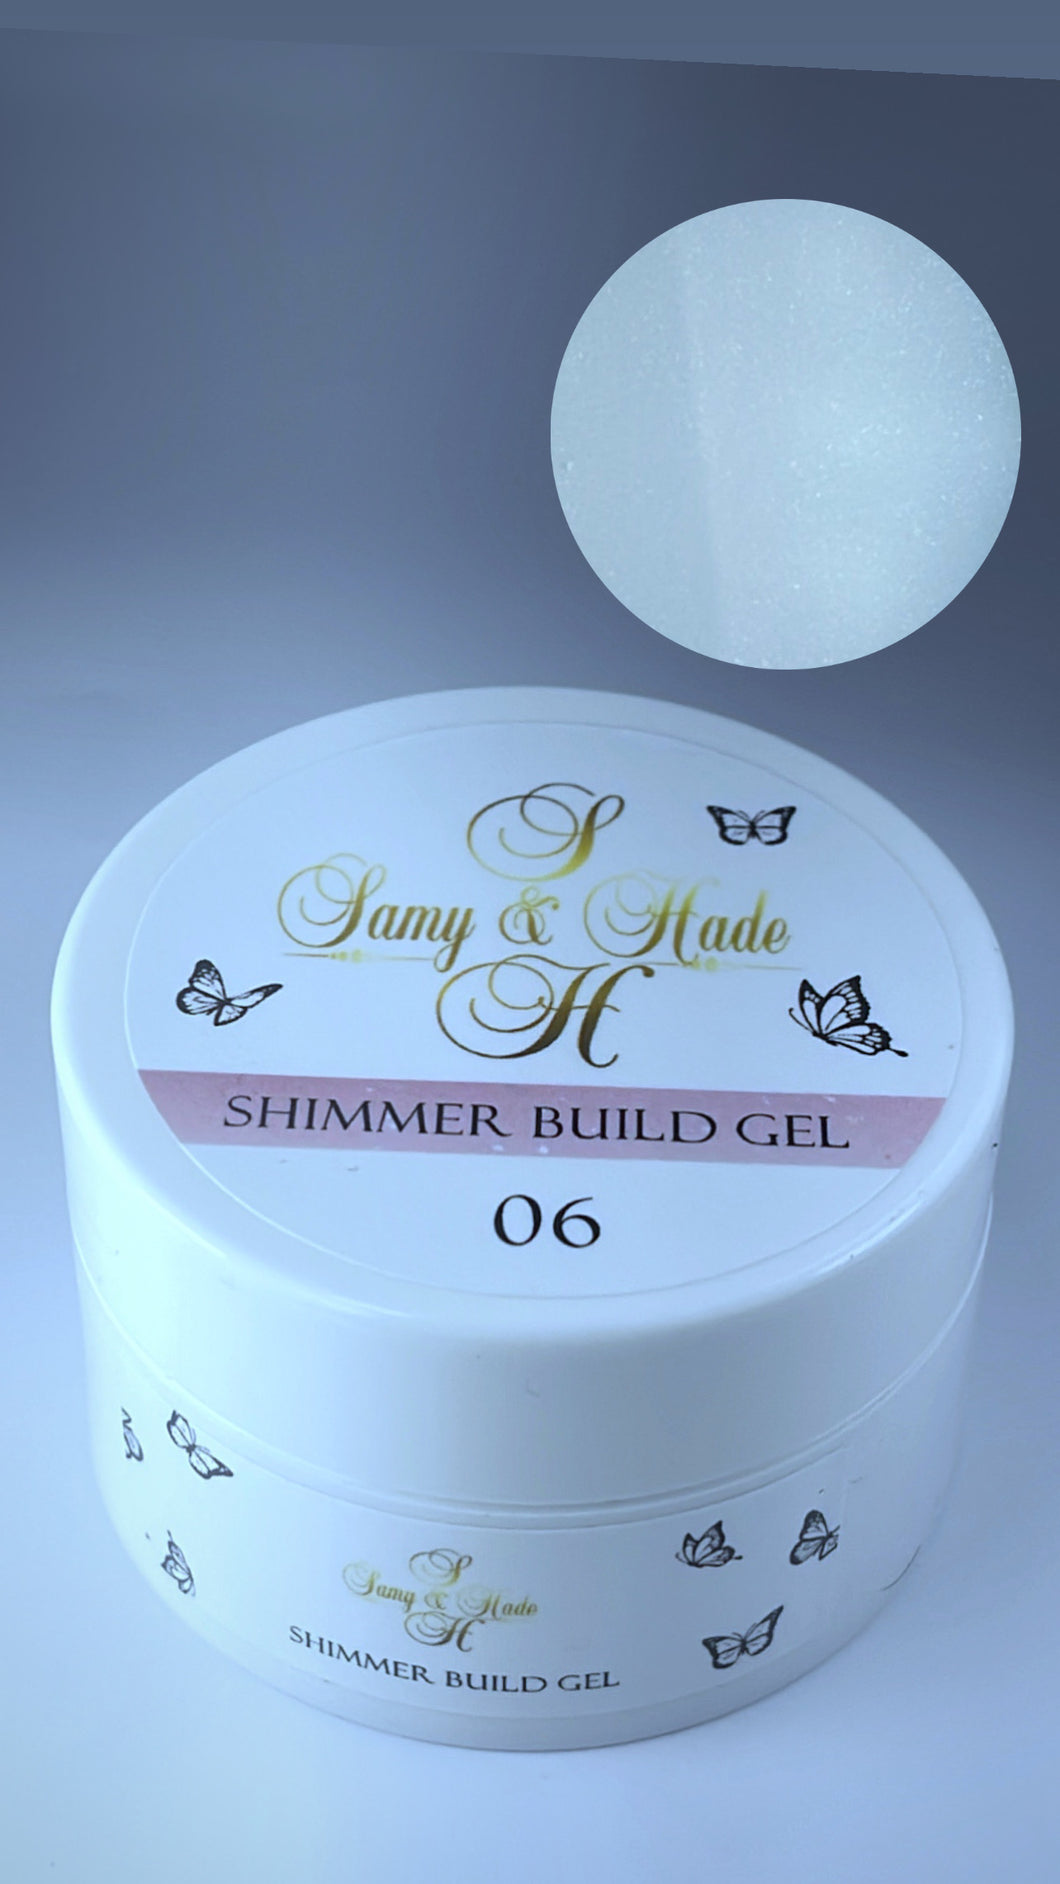 Shimmer build gel #06 60g